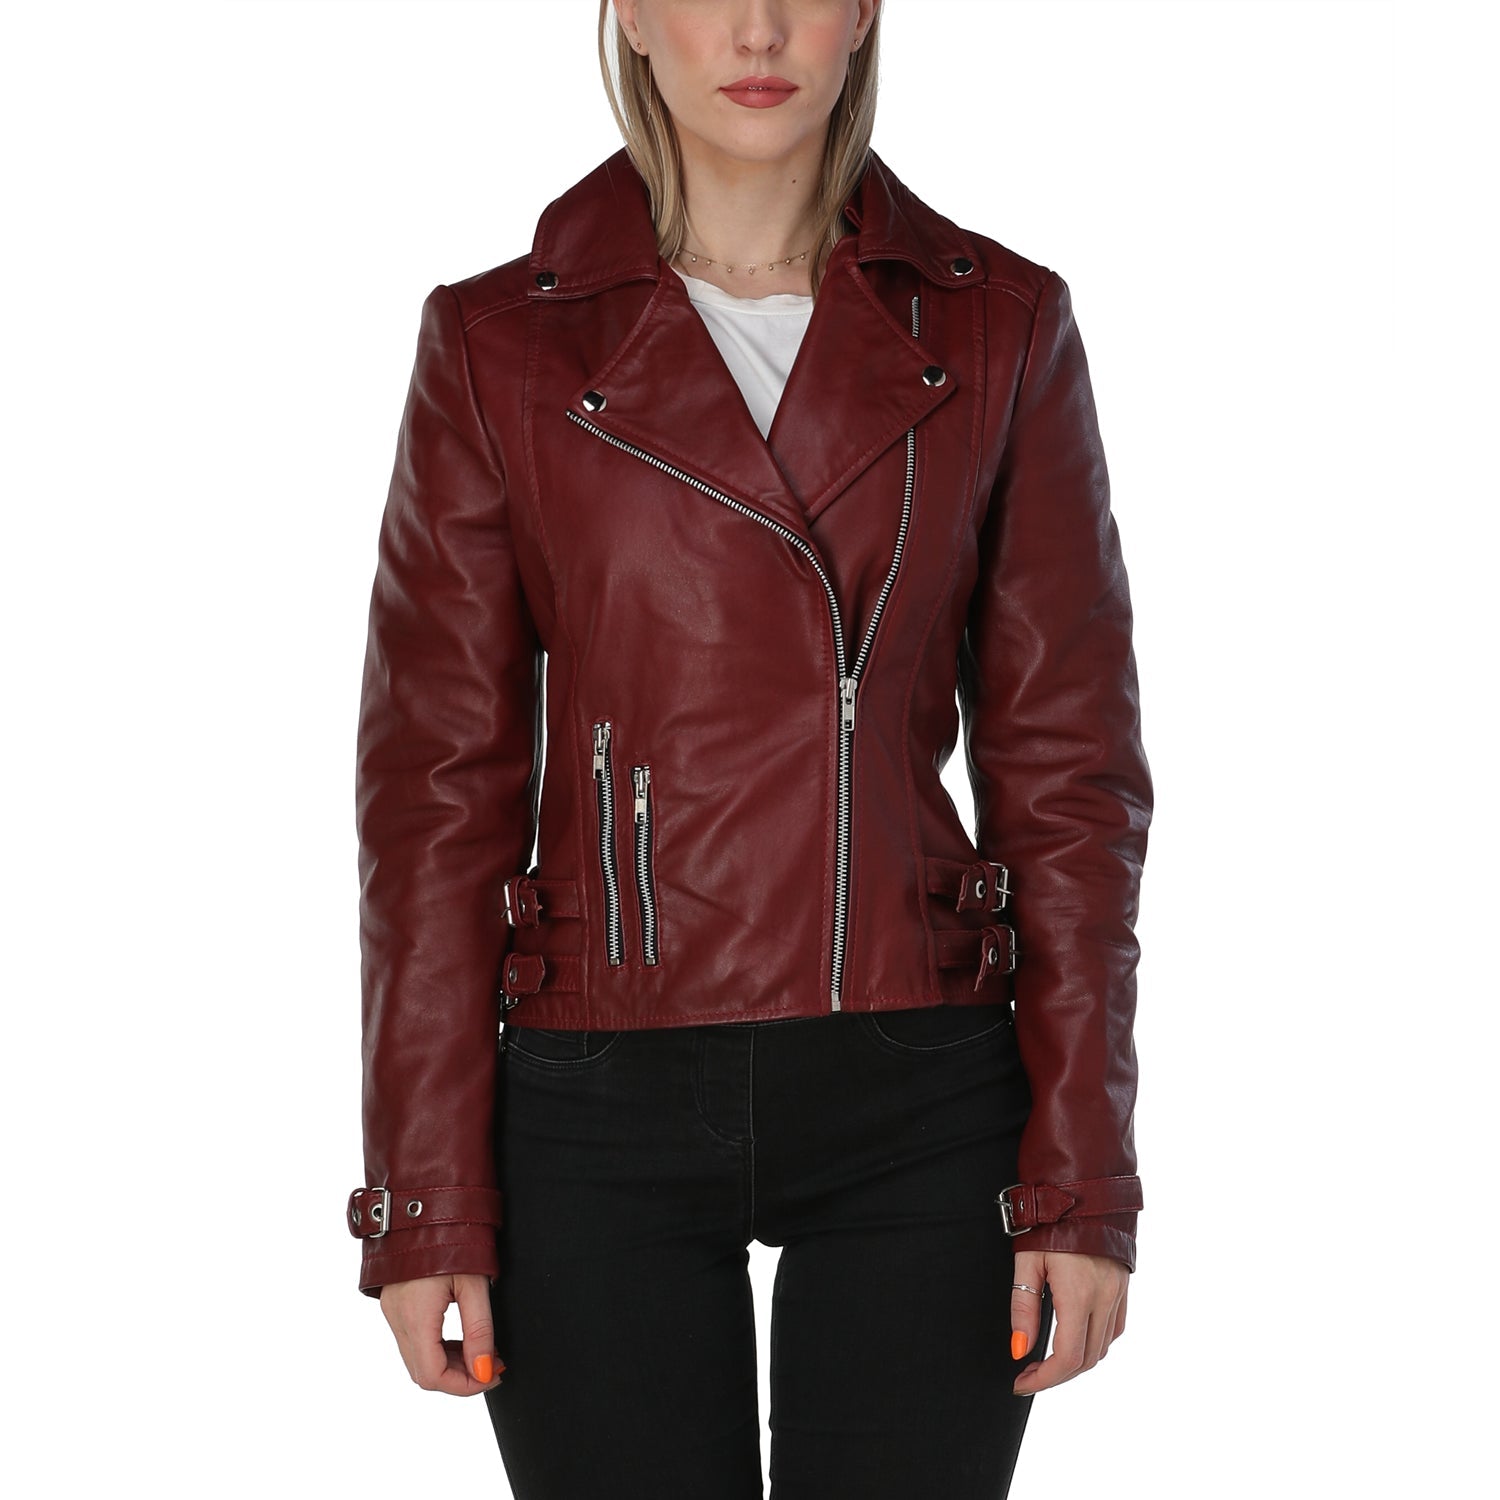 Vegan Leather Jacket - Black Jacket - Moto Jacket - Lulus